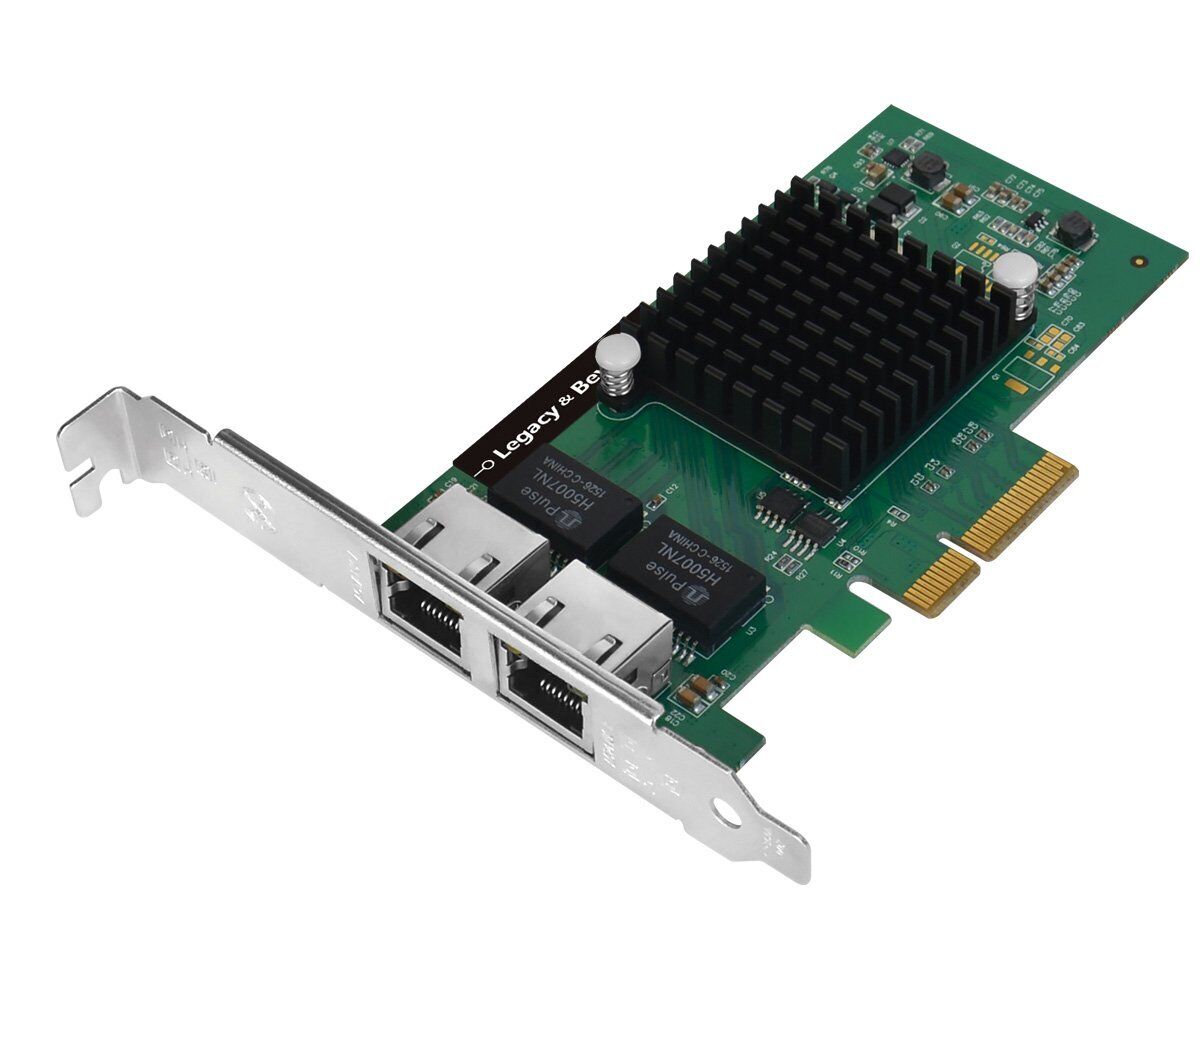 SIIG Dual-Port Gigabit Ethernet PCIe 4-Lane Card - I350-T2 (lb-ge0014-s1)